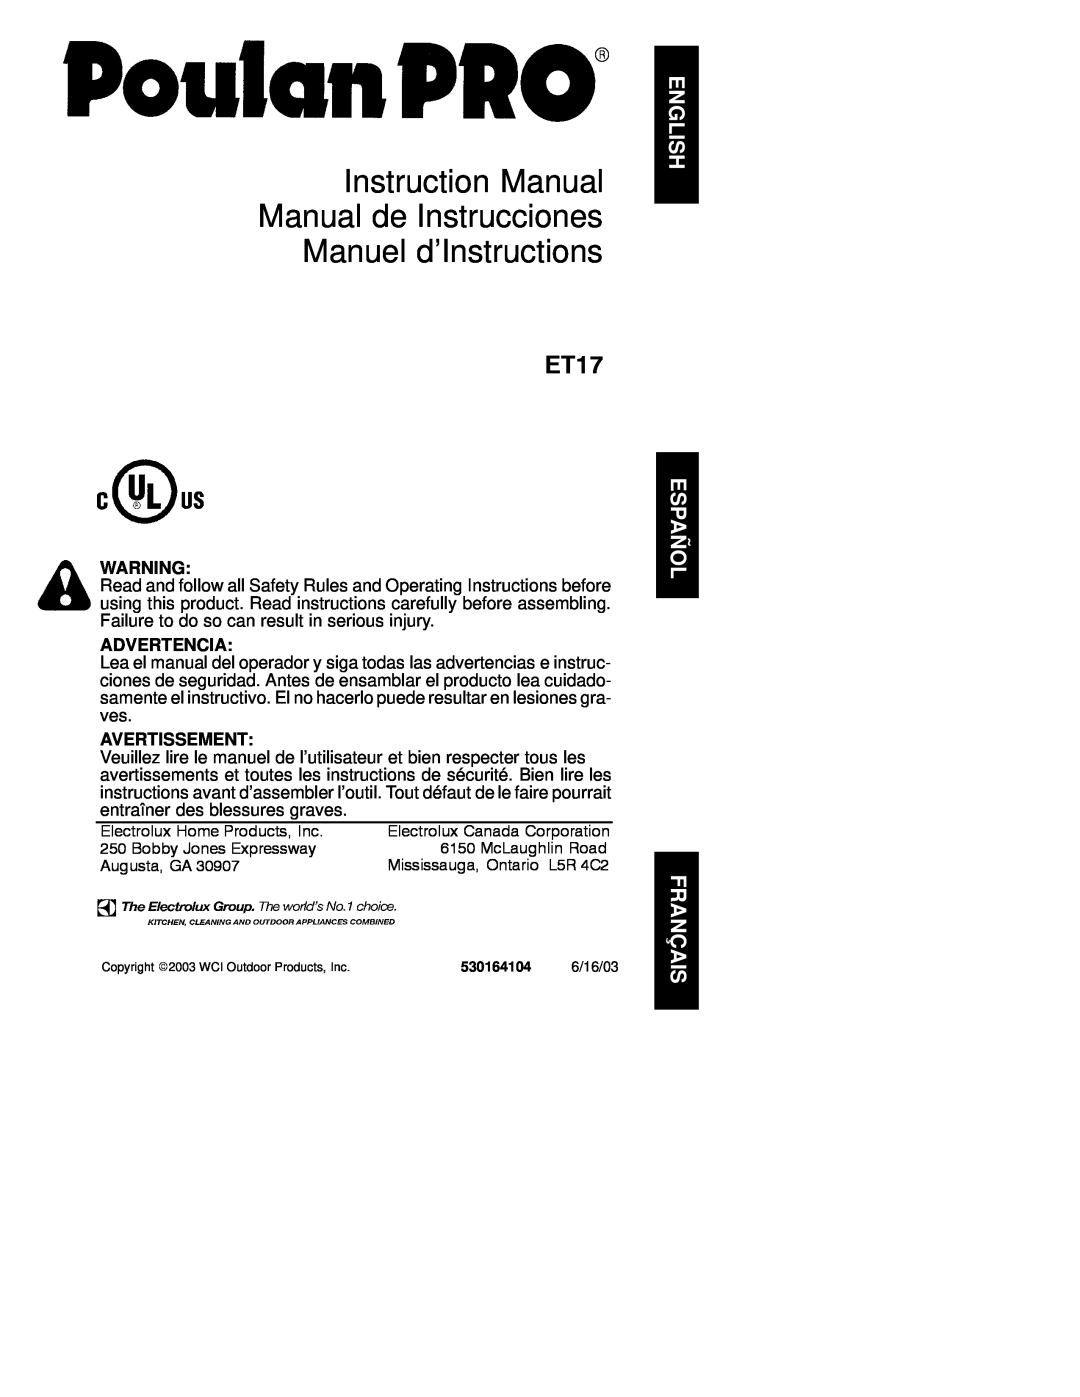 Poulan ET17 instruction manual Advertencia, Avertissement 